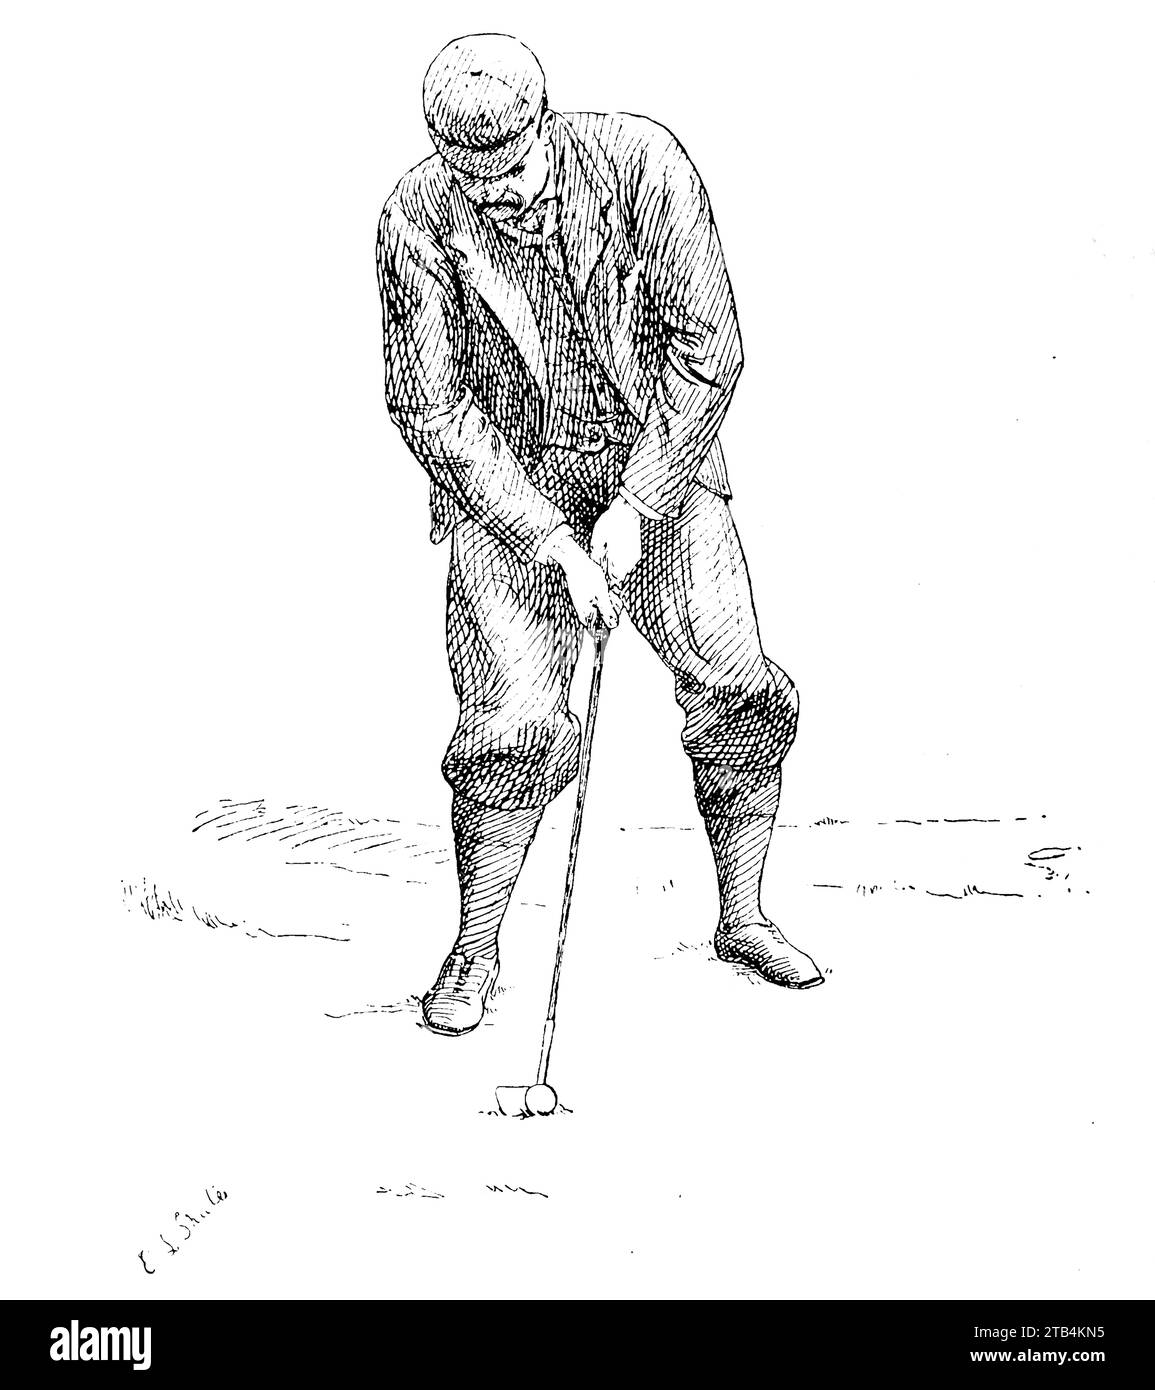 Die Position für den Anflug, von E.L. Shute. Aus einer Illustration über Golf von 1889 bis 1901. Die Geschichte des Golfs ist lang. Obwohl seine Ursprünge umstritten sind, sind sich die Historiker allgemein einig, dass das sogenannte „moderne“ Golf im Mittelalter in Schottland begann. Erst Mitte bis Ende des 19. Jahrhunderts wurde dieser Sport in Großbritannien, dem britischen Empire und dann in den Vereinigten Staaten populärer. Im Laufe der Jahre haben sich der bescheidene Golfball und der Golfclub stark verändert. Stockfoto